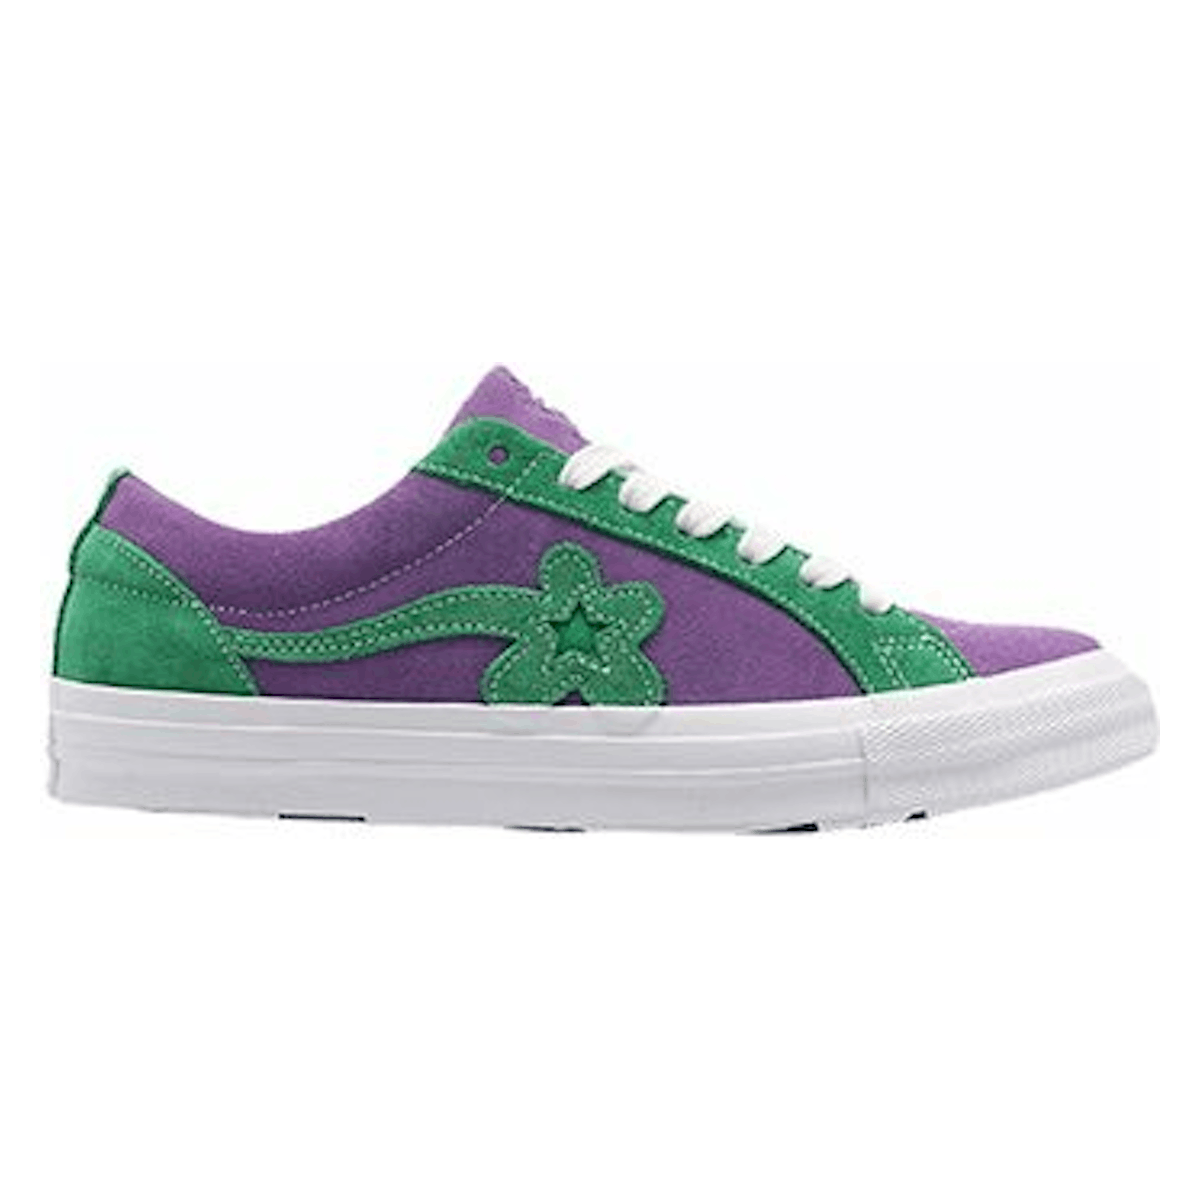 Converse x Golf Le Fleur One Star Purple Green